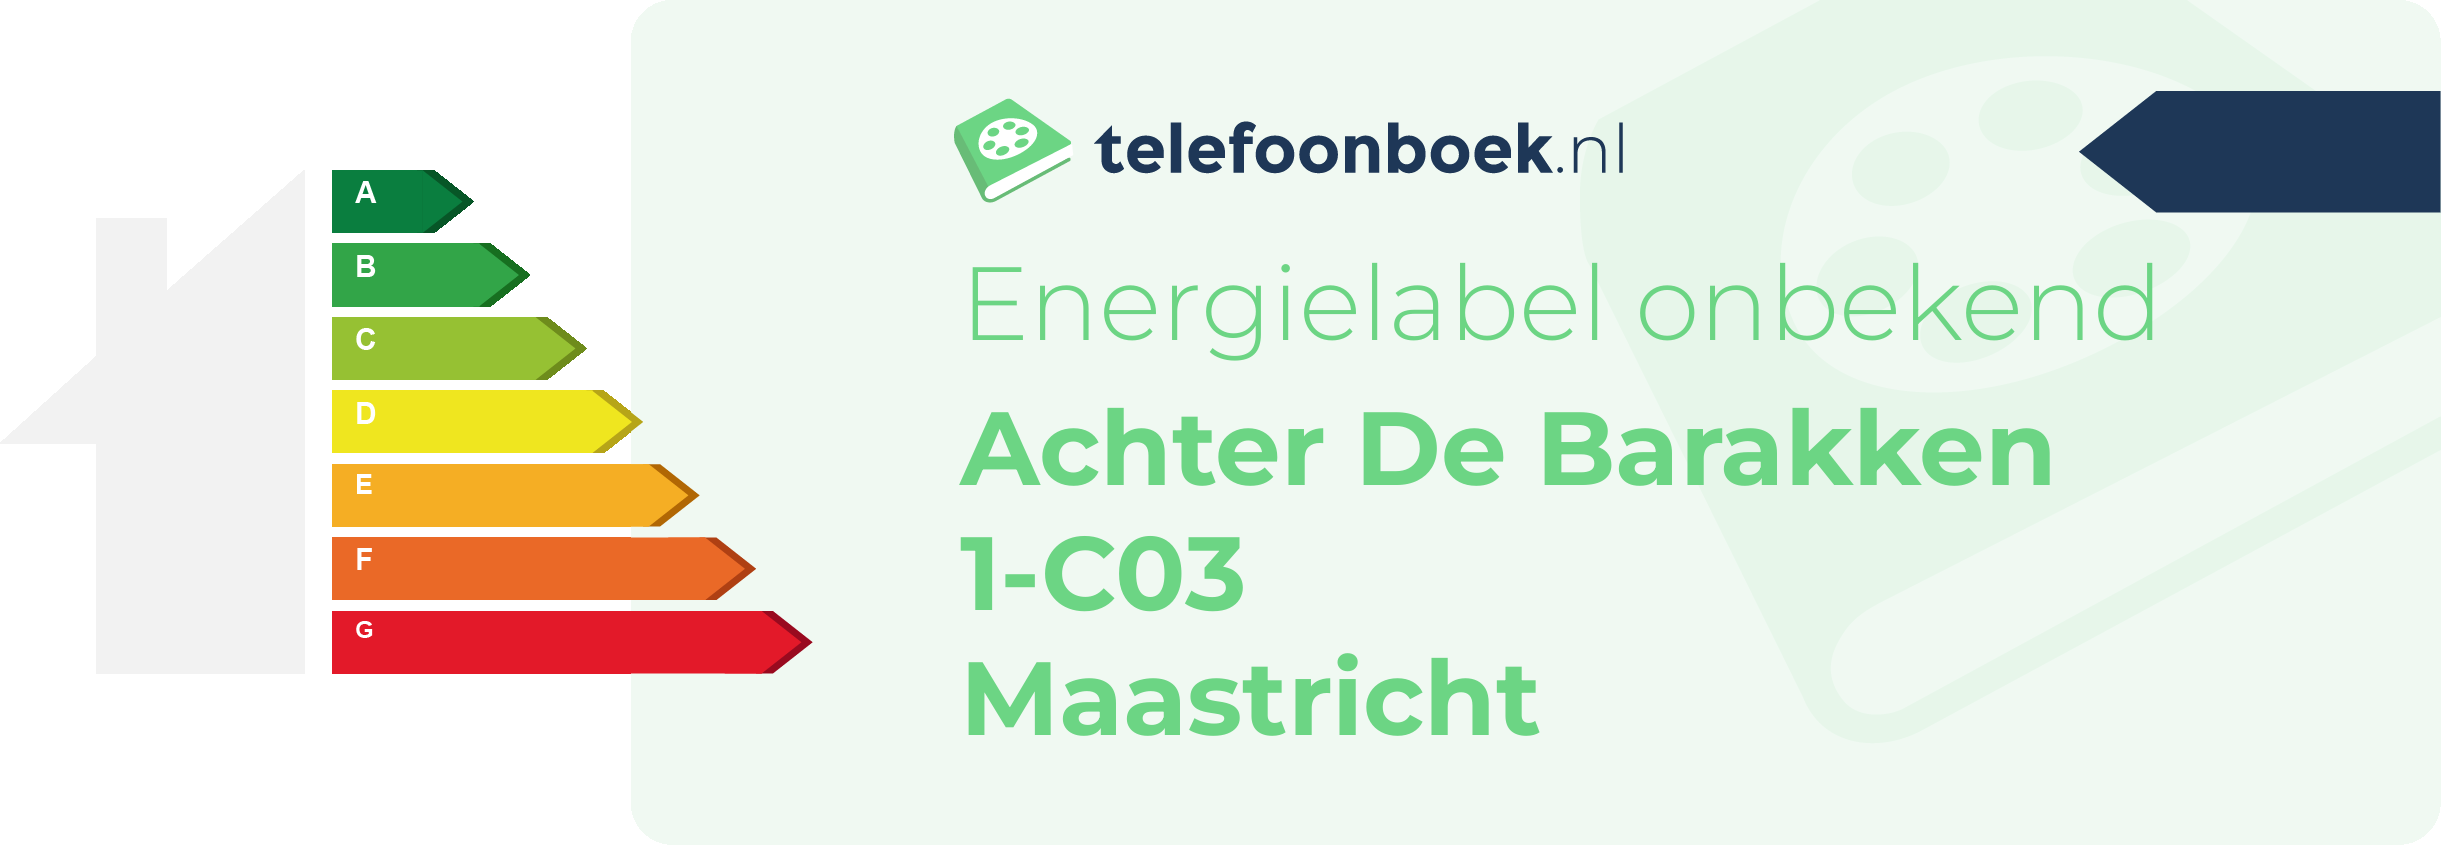 Energielabel Achter De Barakken 1-C03 Maastricht